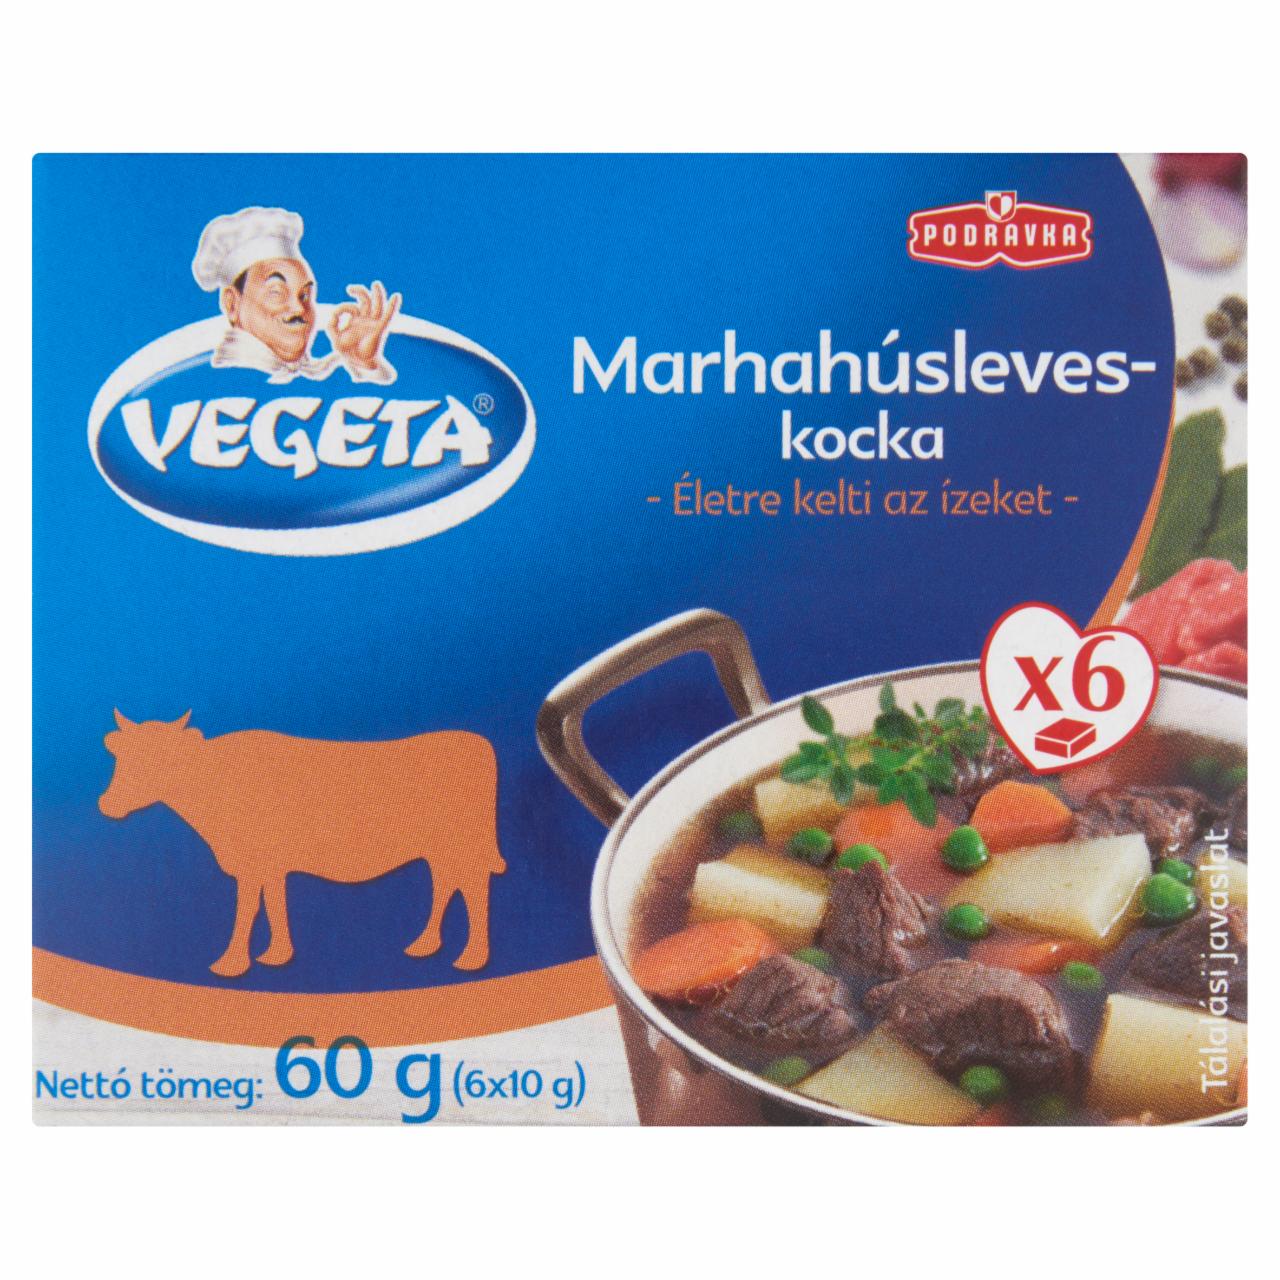 Képek - Vegeta marhahúsleves-kocka 60 g